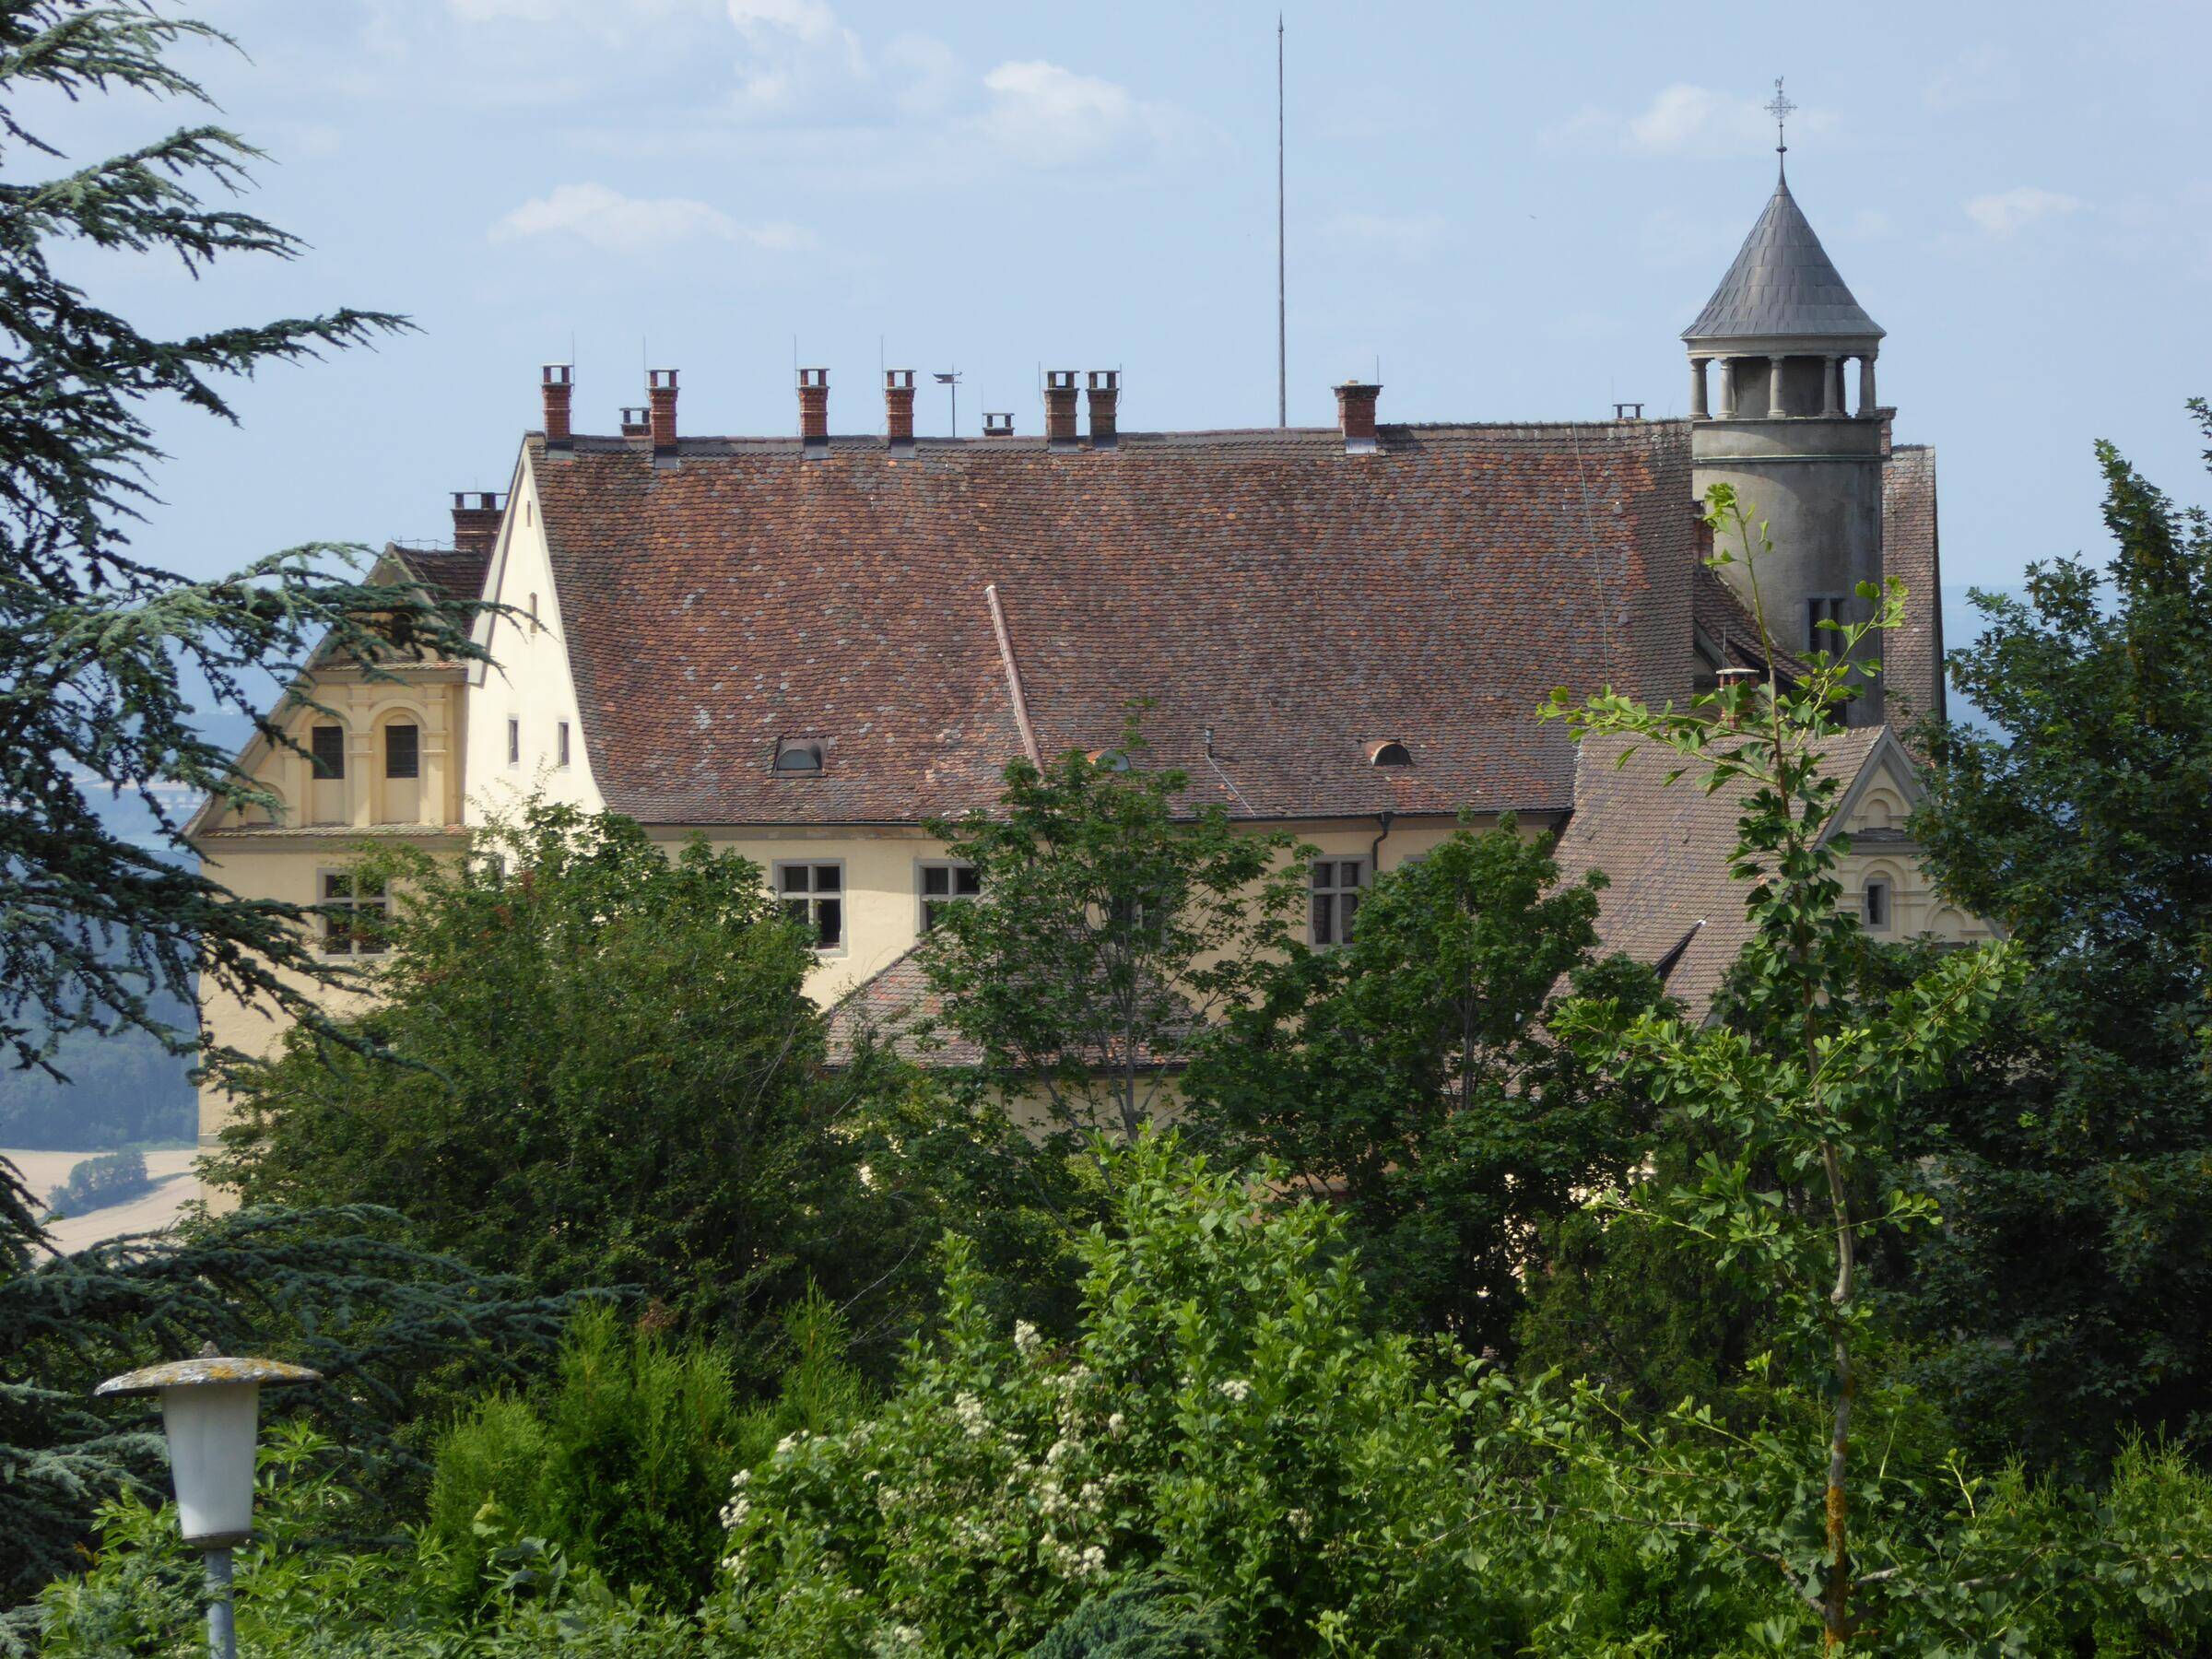 Umgebung - Schloss Heiligenberg